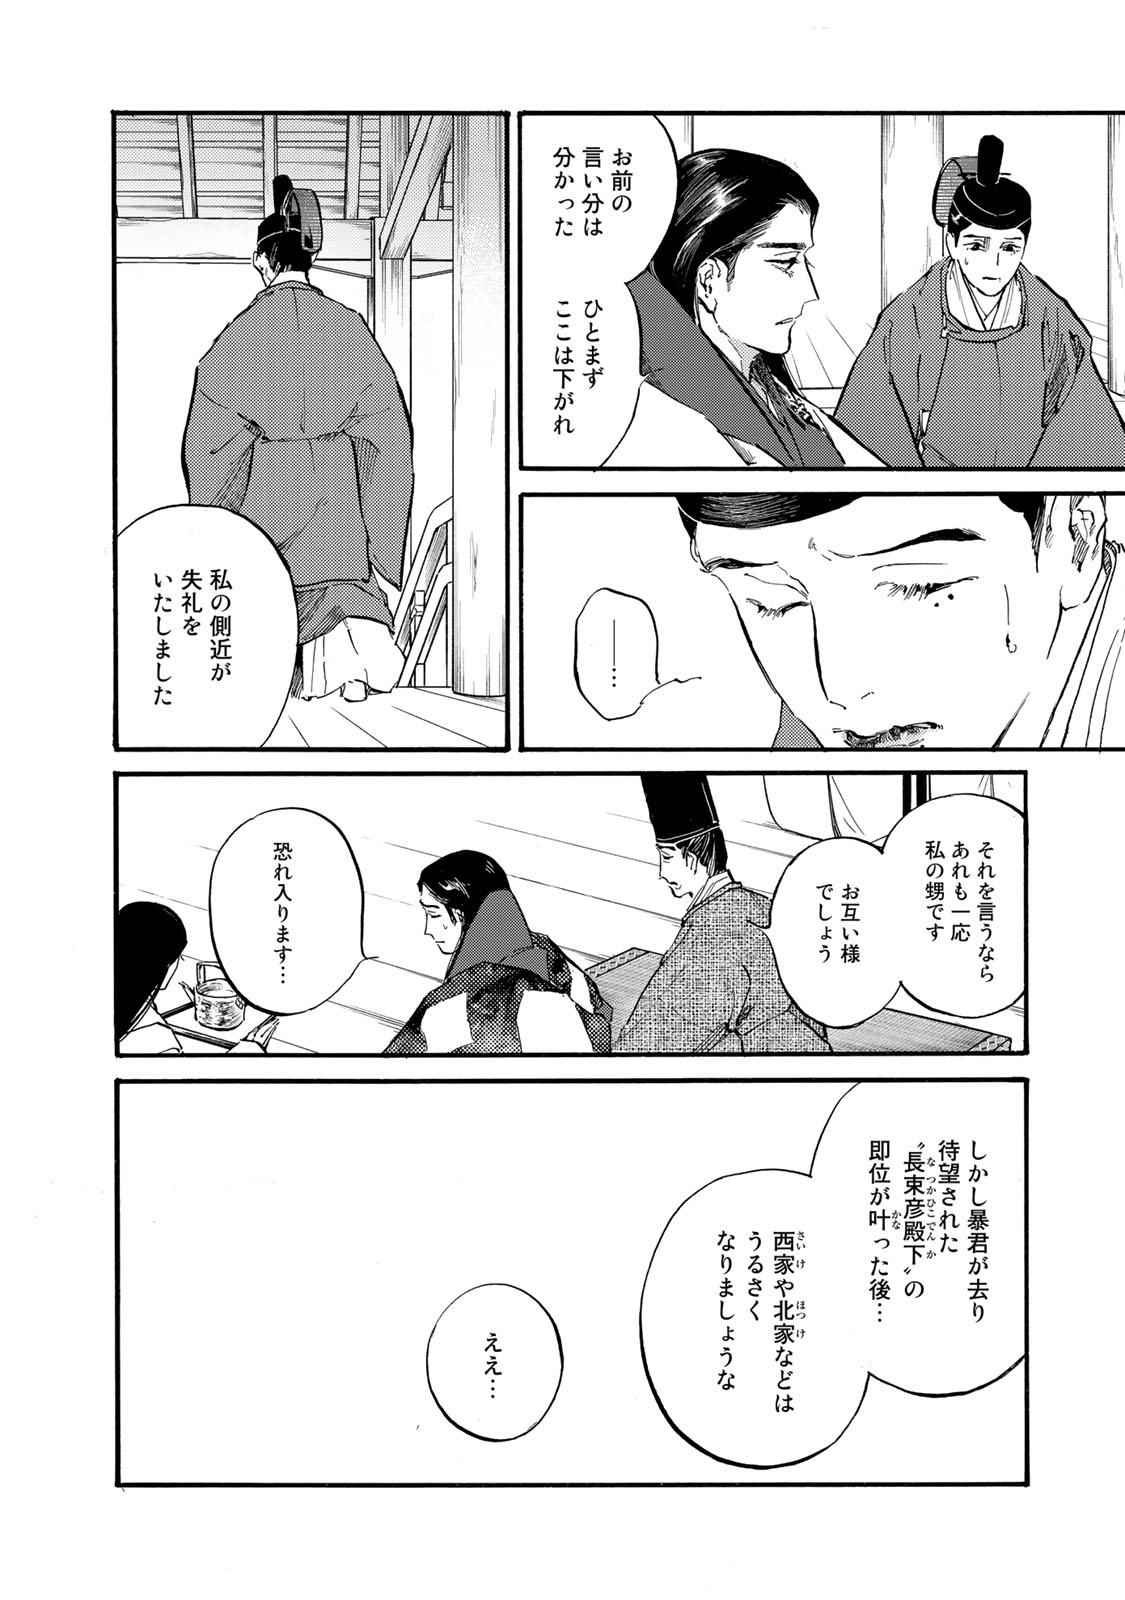 Karasu wa Aruji wo Erabanai - Chapter 38 - Page 8